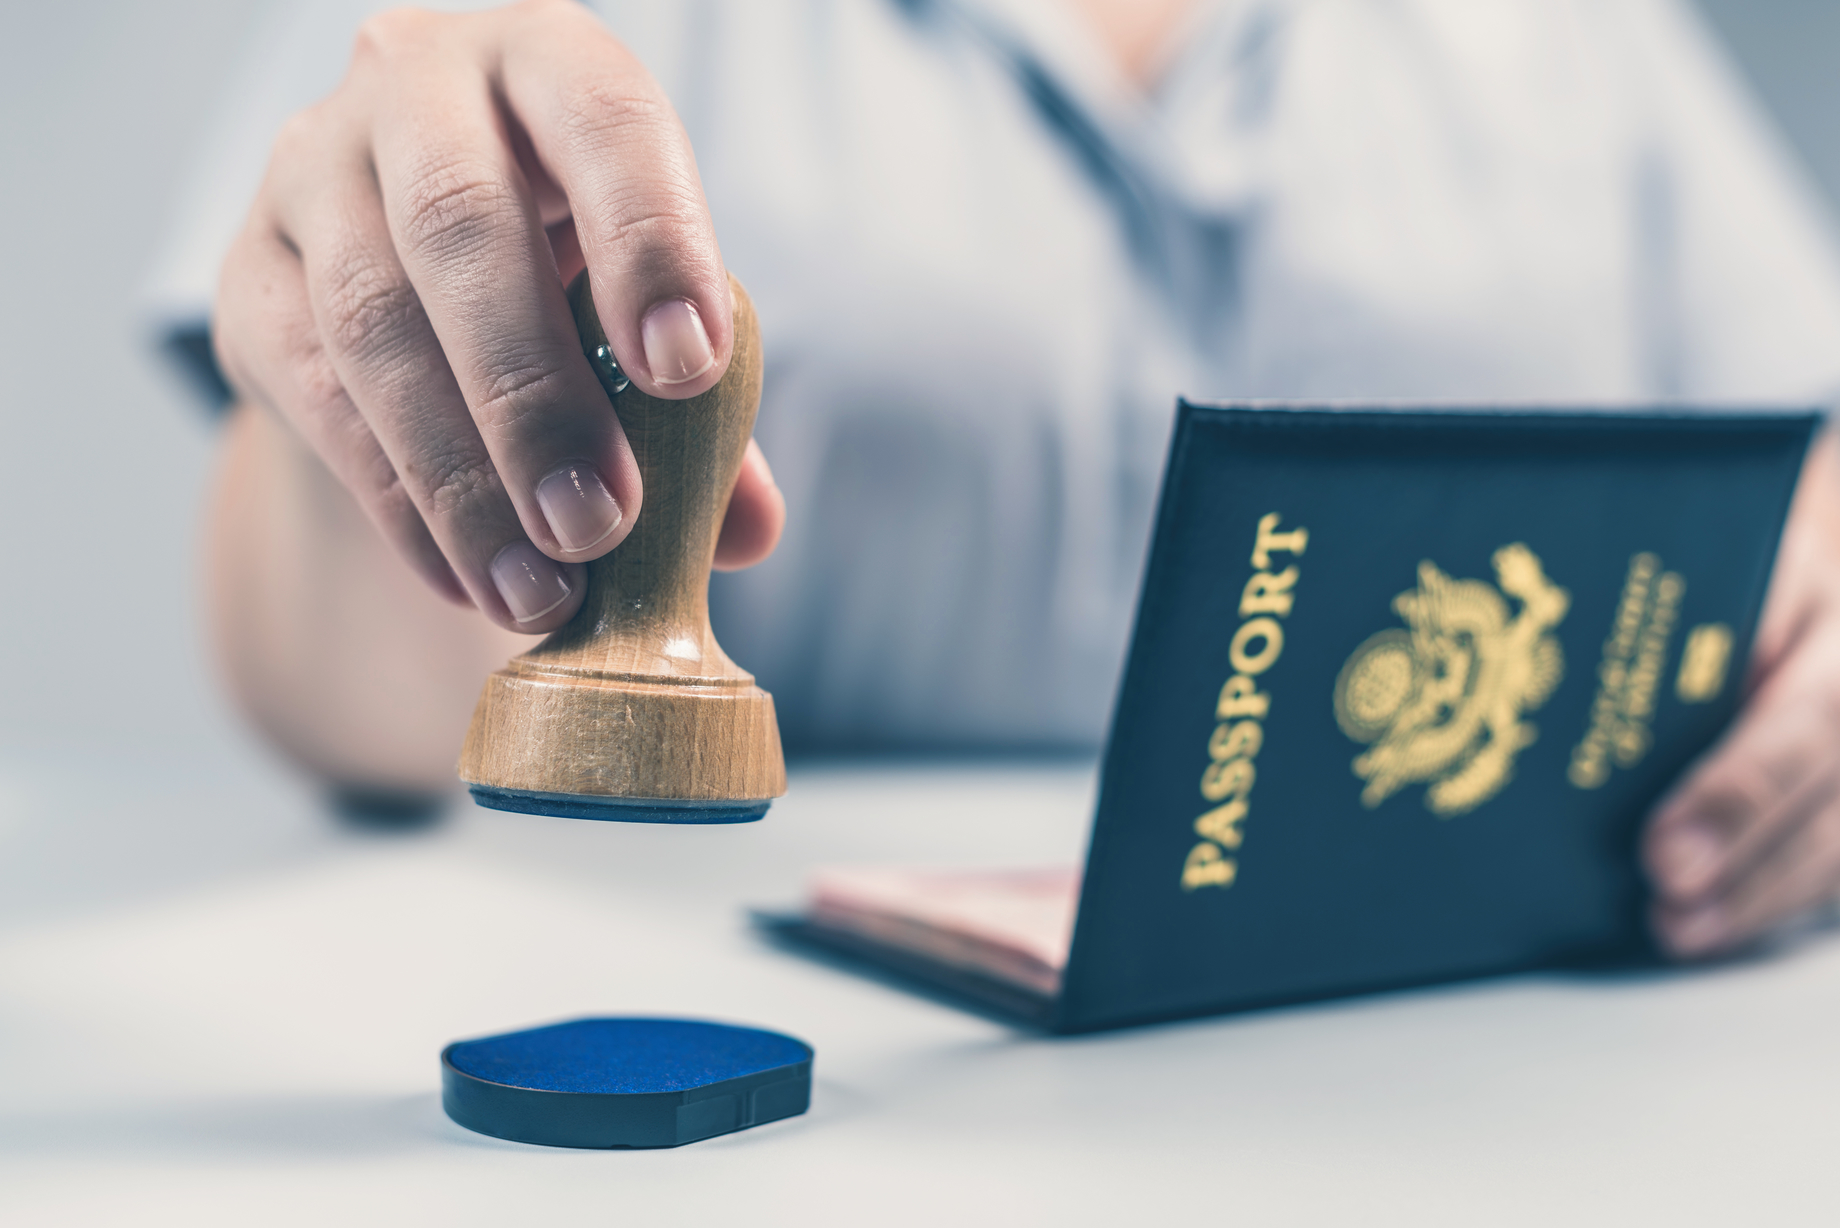 Documento é carimbado; passaporte: qual devo usar se tiver dupla nacionalidade?